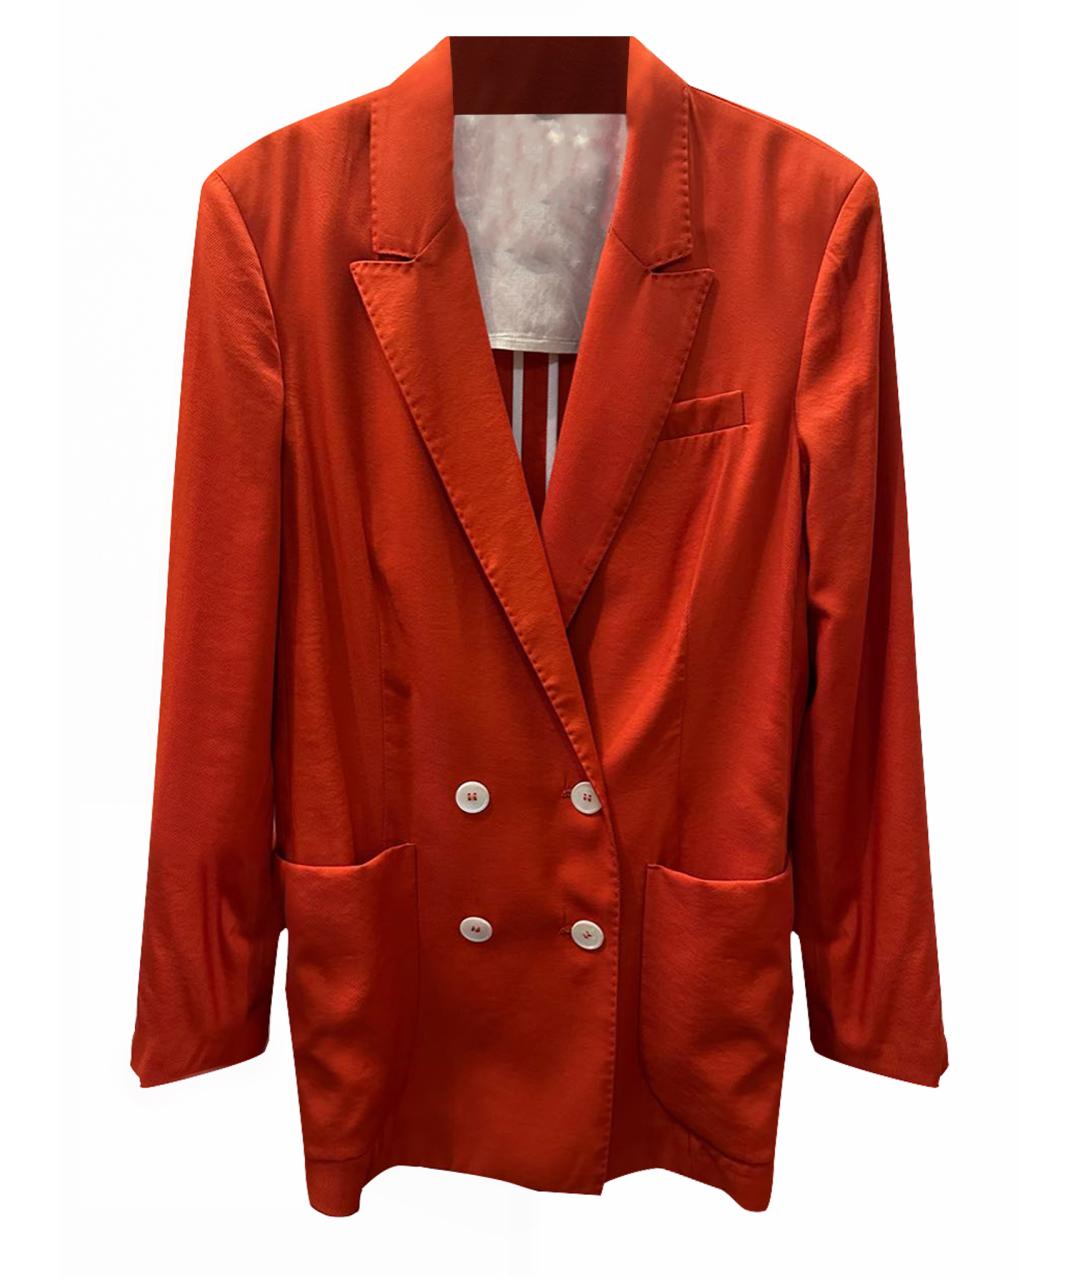 TELA Оранжевый вискозный жакет/пиджак, фото 1